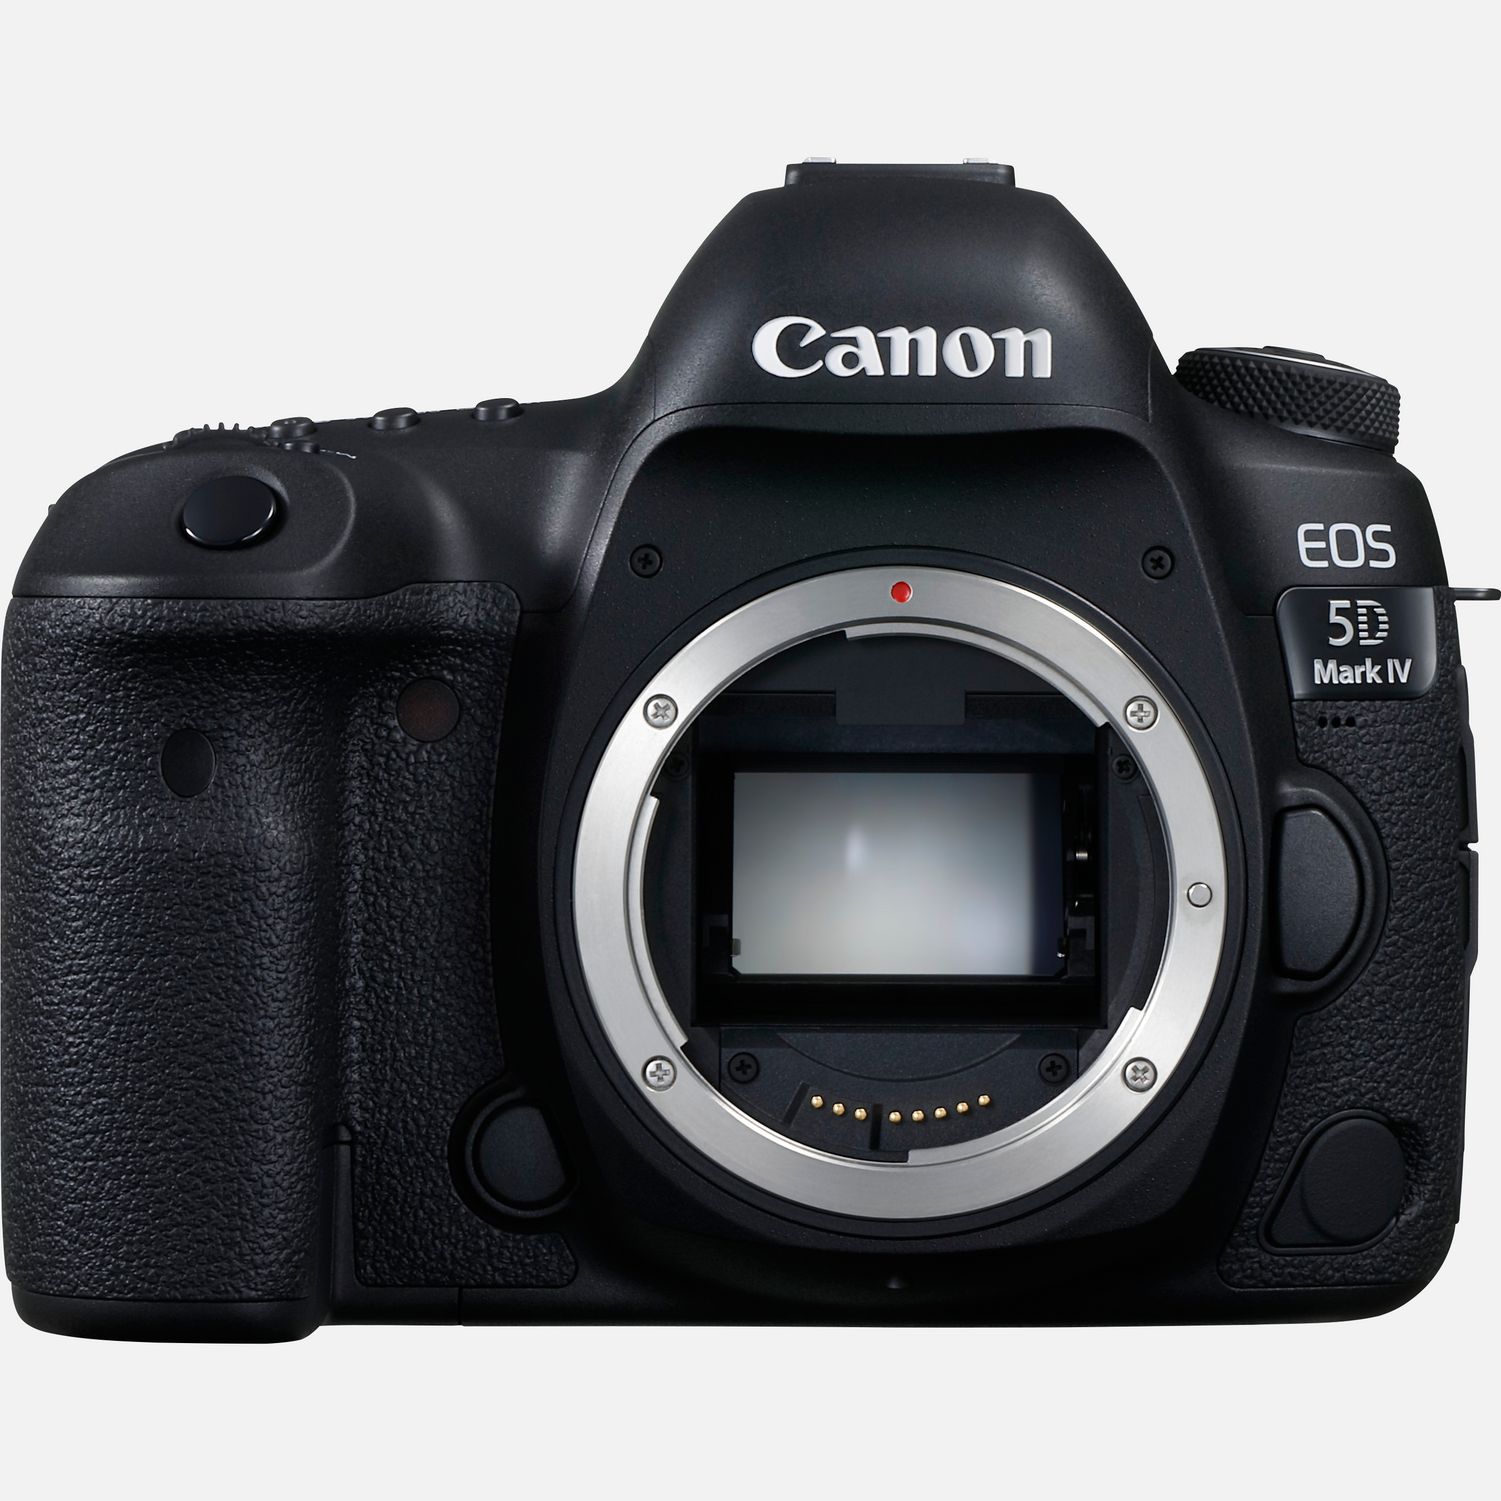 Zeggen uitvinding over het algemeen Canon EOS 5D Mark IV body in Wifi-camera's — Canon Nederland Store